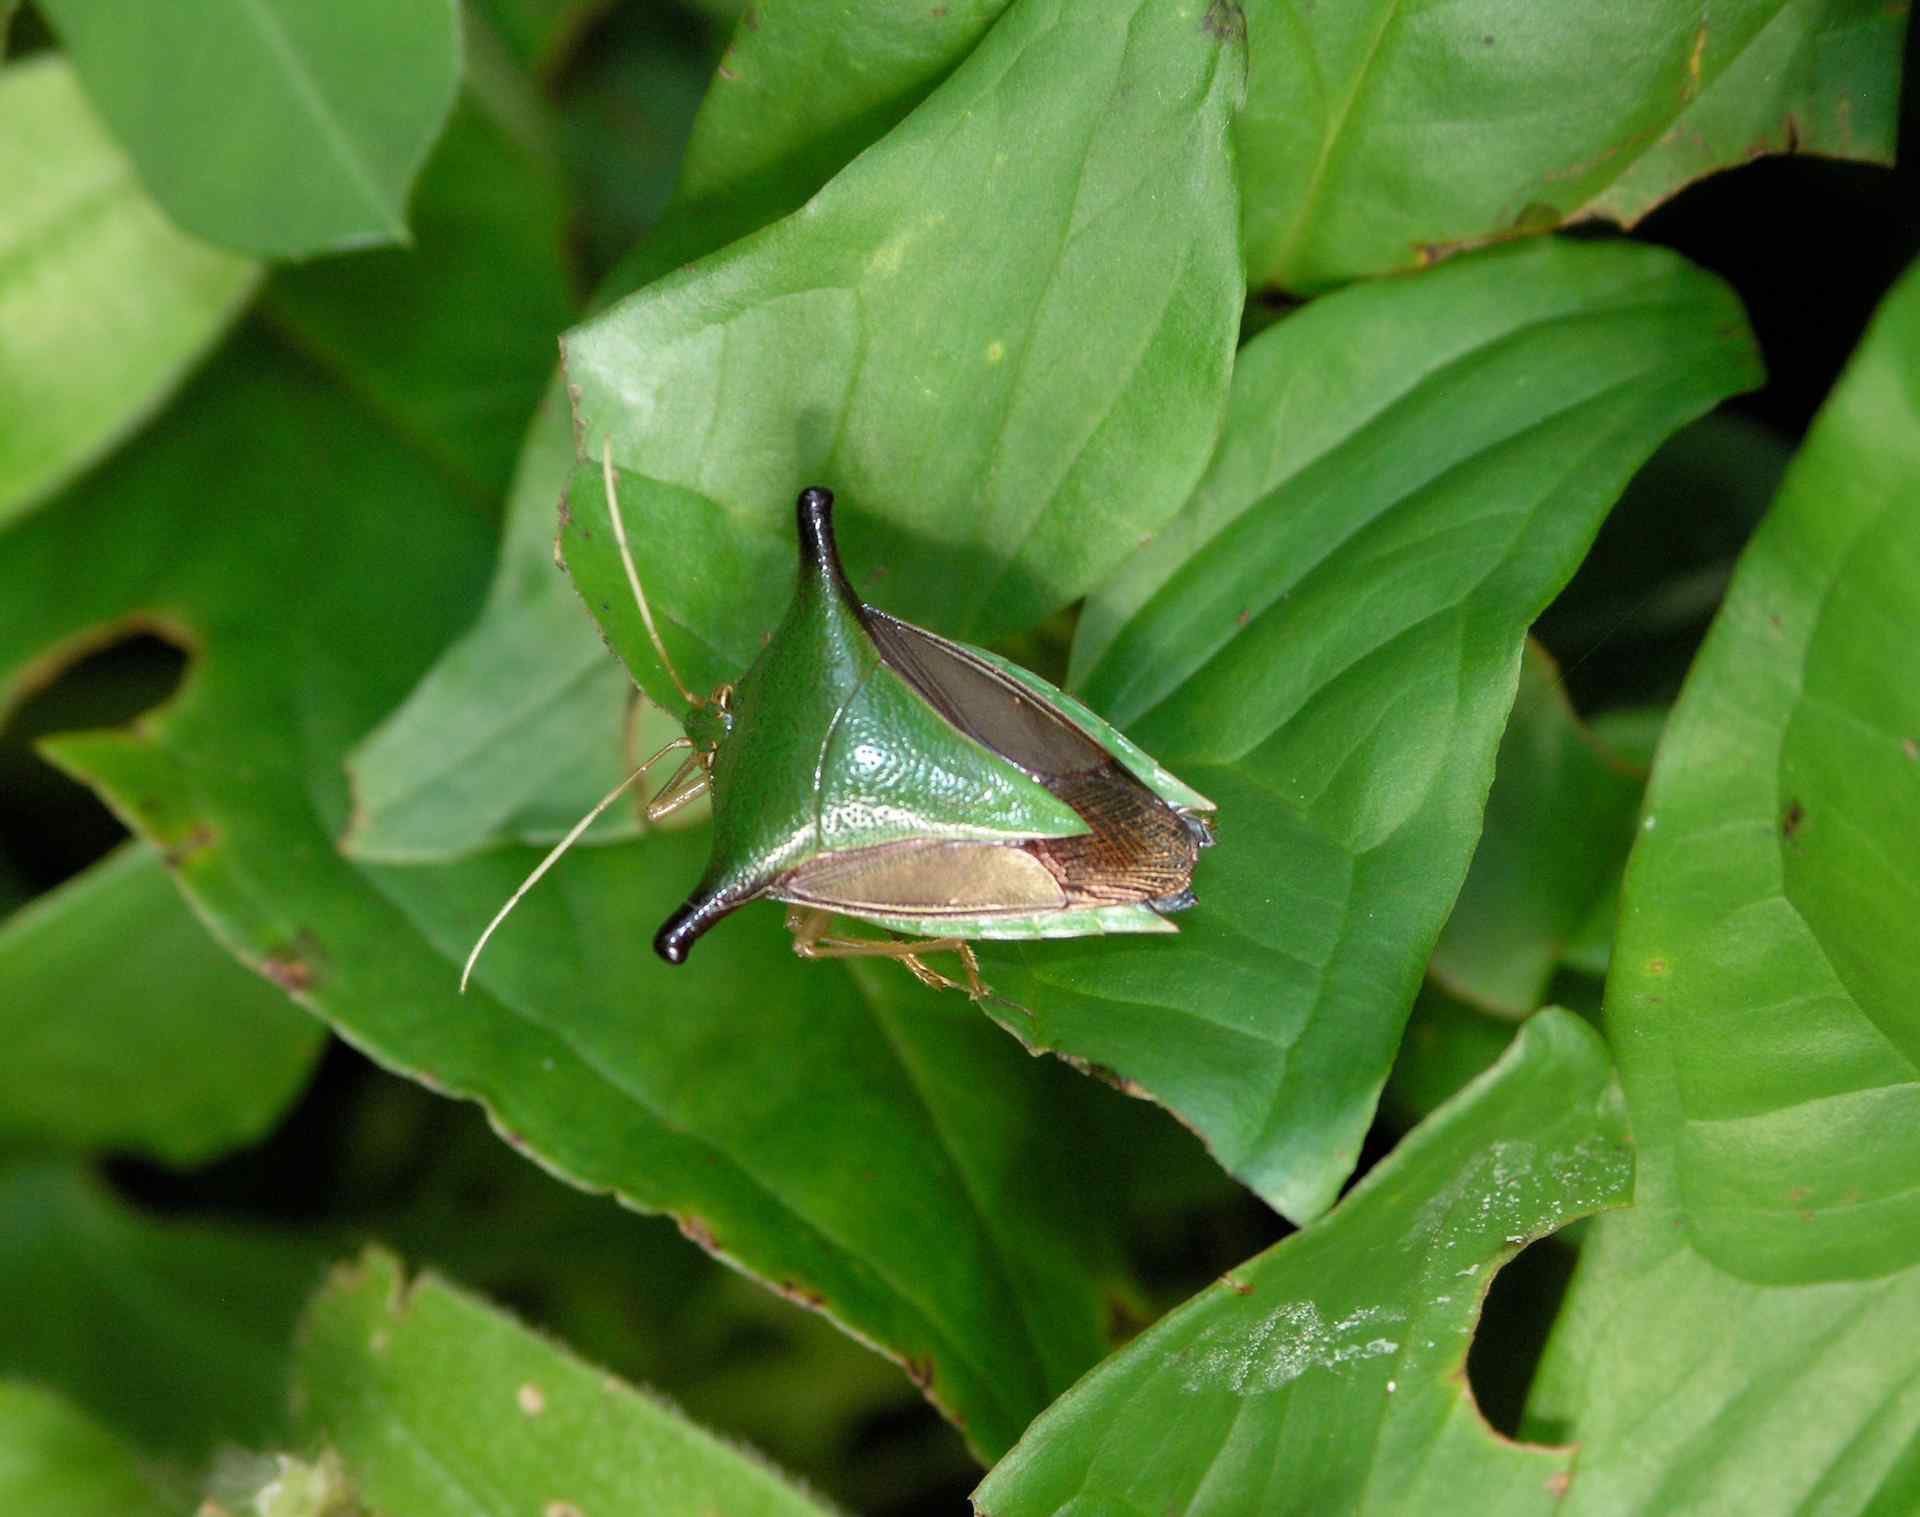 Chinche - Stink bug; Manzanillo, Limón, Costa Rica